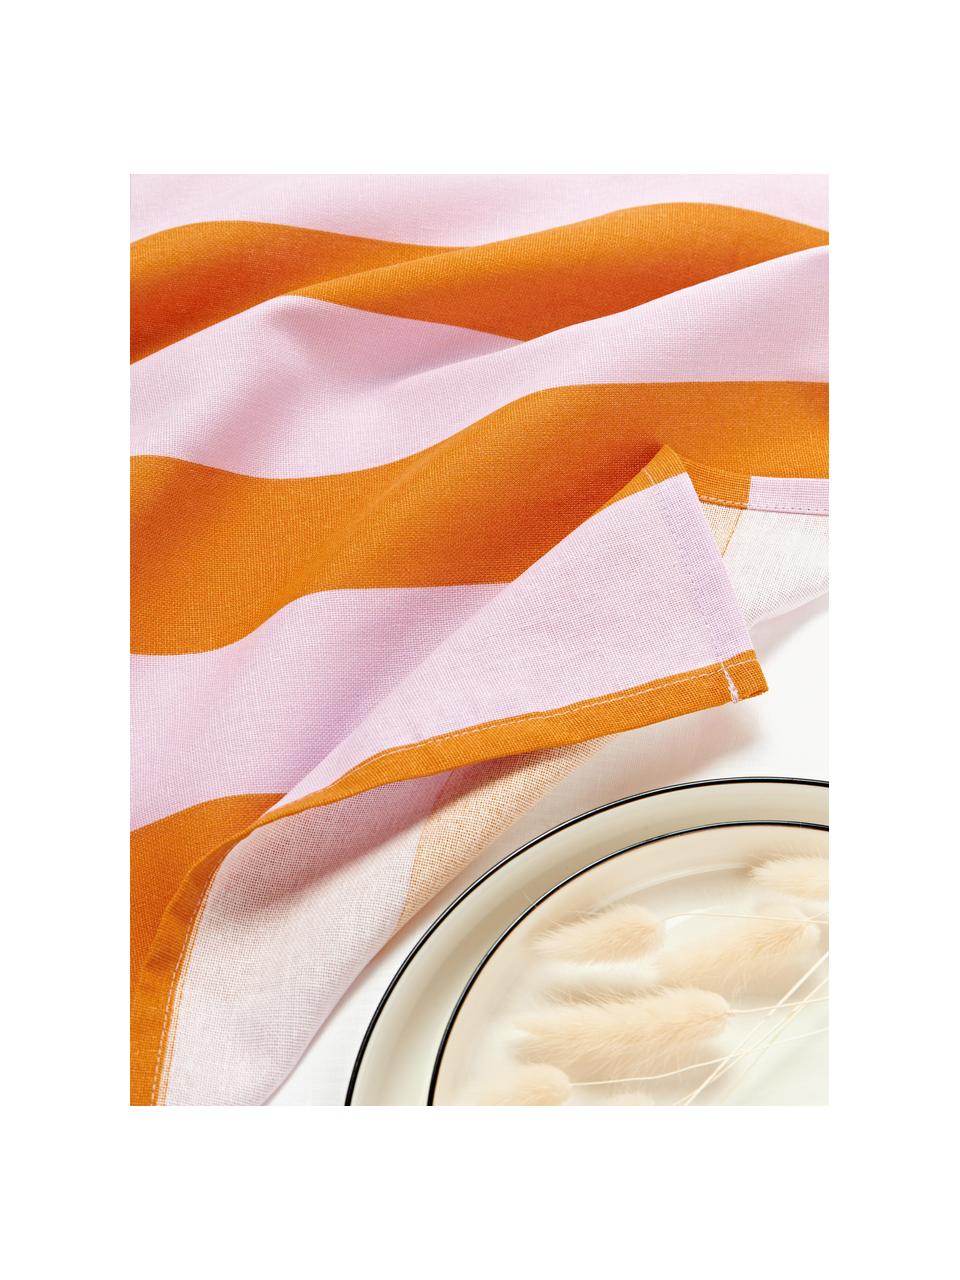 Pruhované látkové ubrousky Juno, 8 ks, 100 % bavlna, Oranžová, levandulová, Š 45 cm, D 45 cm